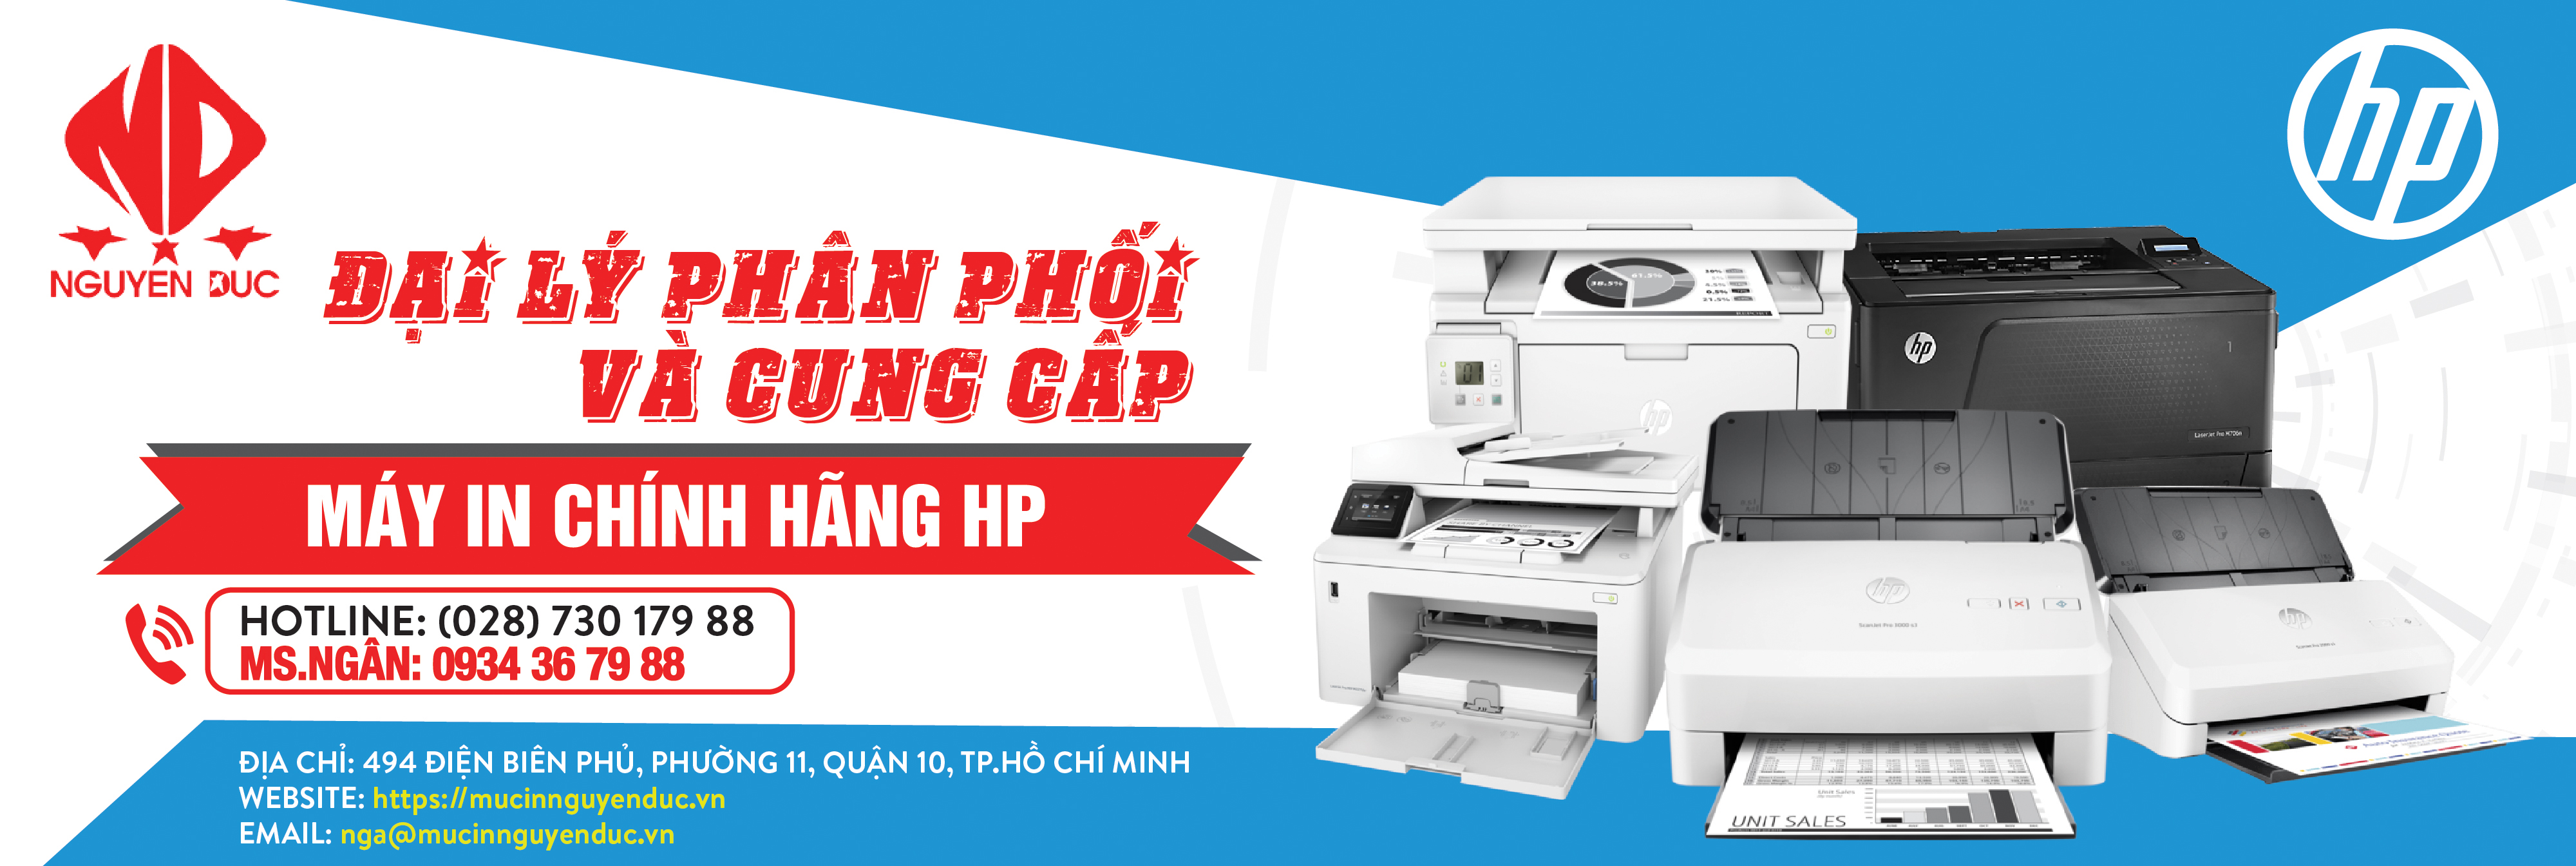 Đại lý phân phối máy in HP Laserjet Pro 227SDN (G3Q74A) chính hãng, giao hàng tại tỉnh Cao Bằng